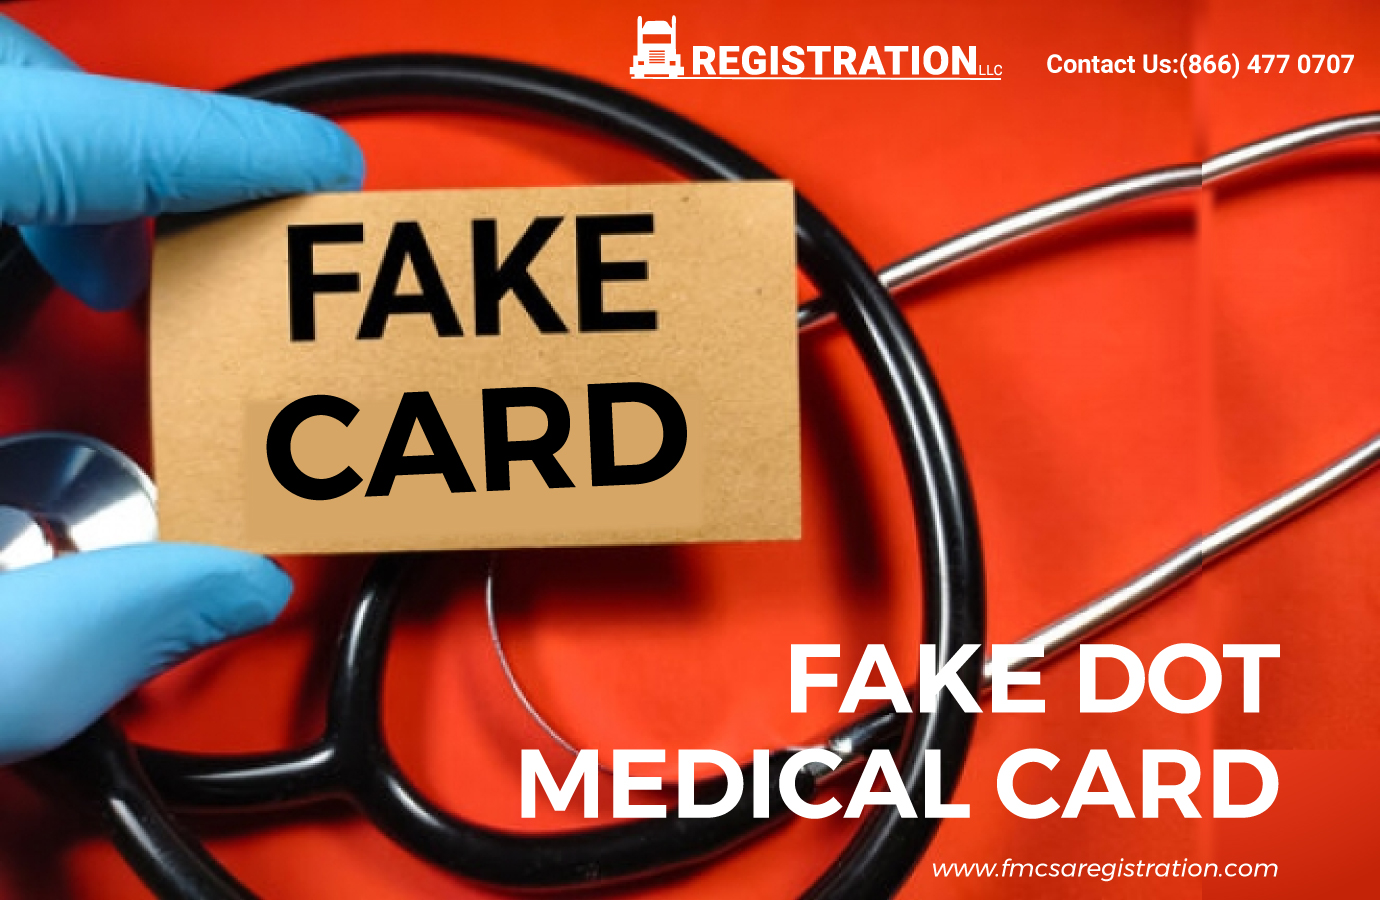 FAKE DOT MEDICAL CARD